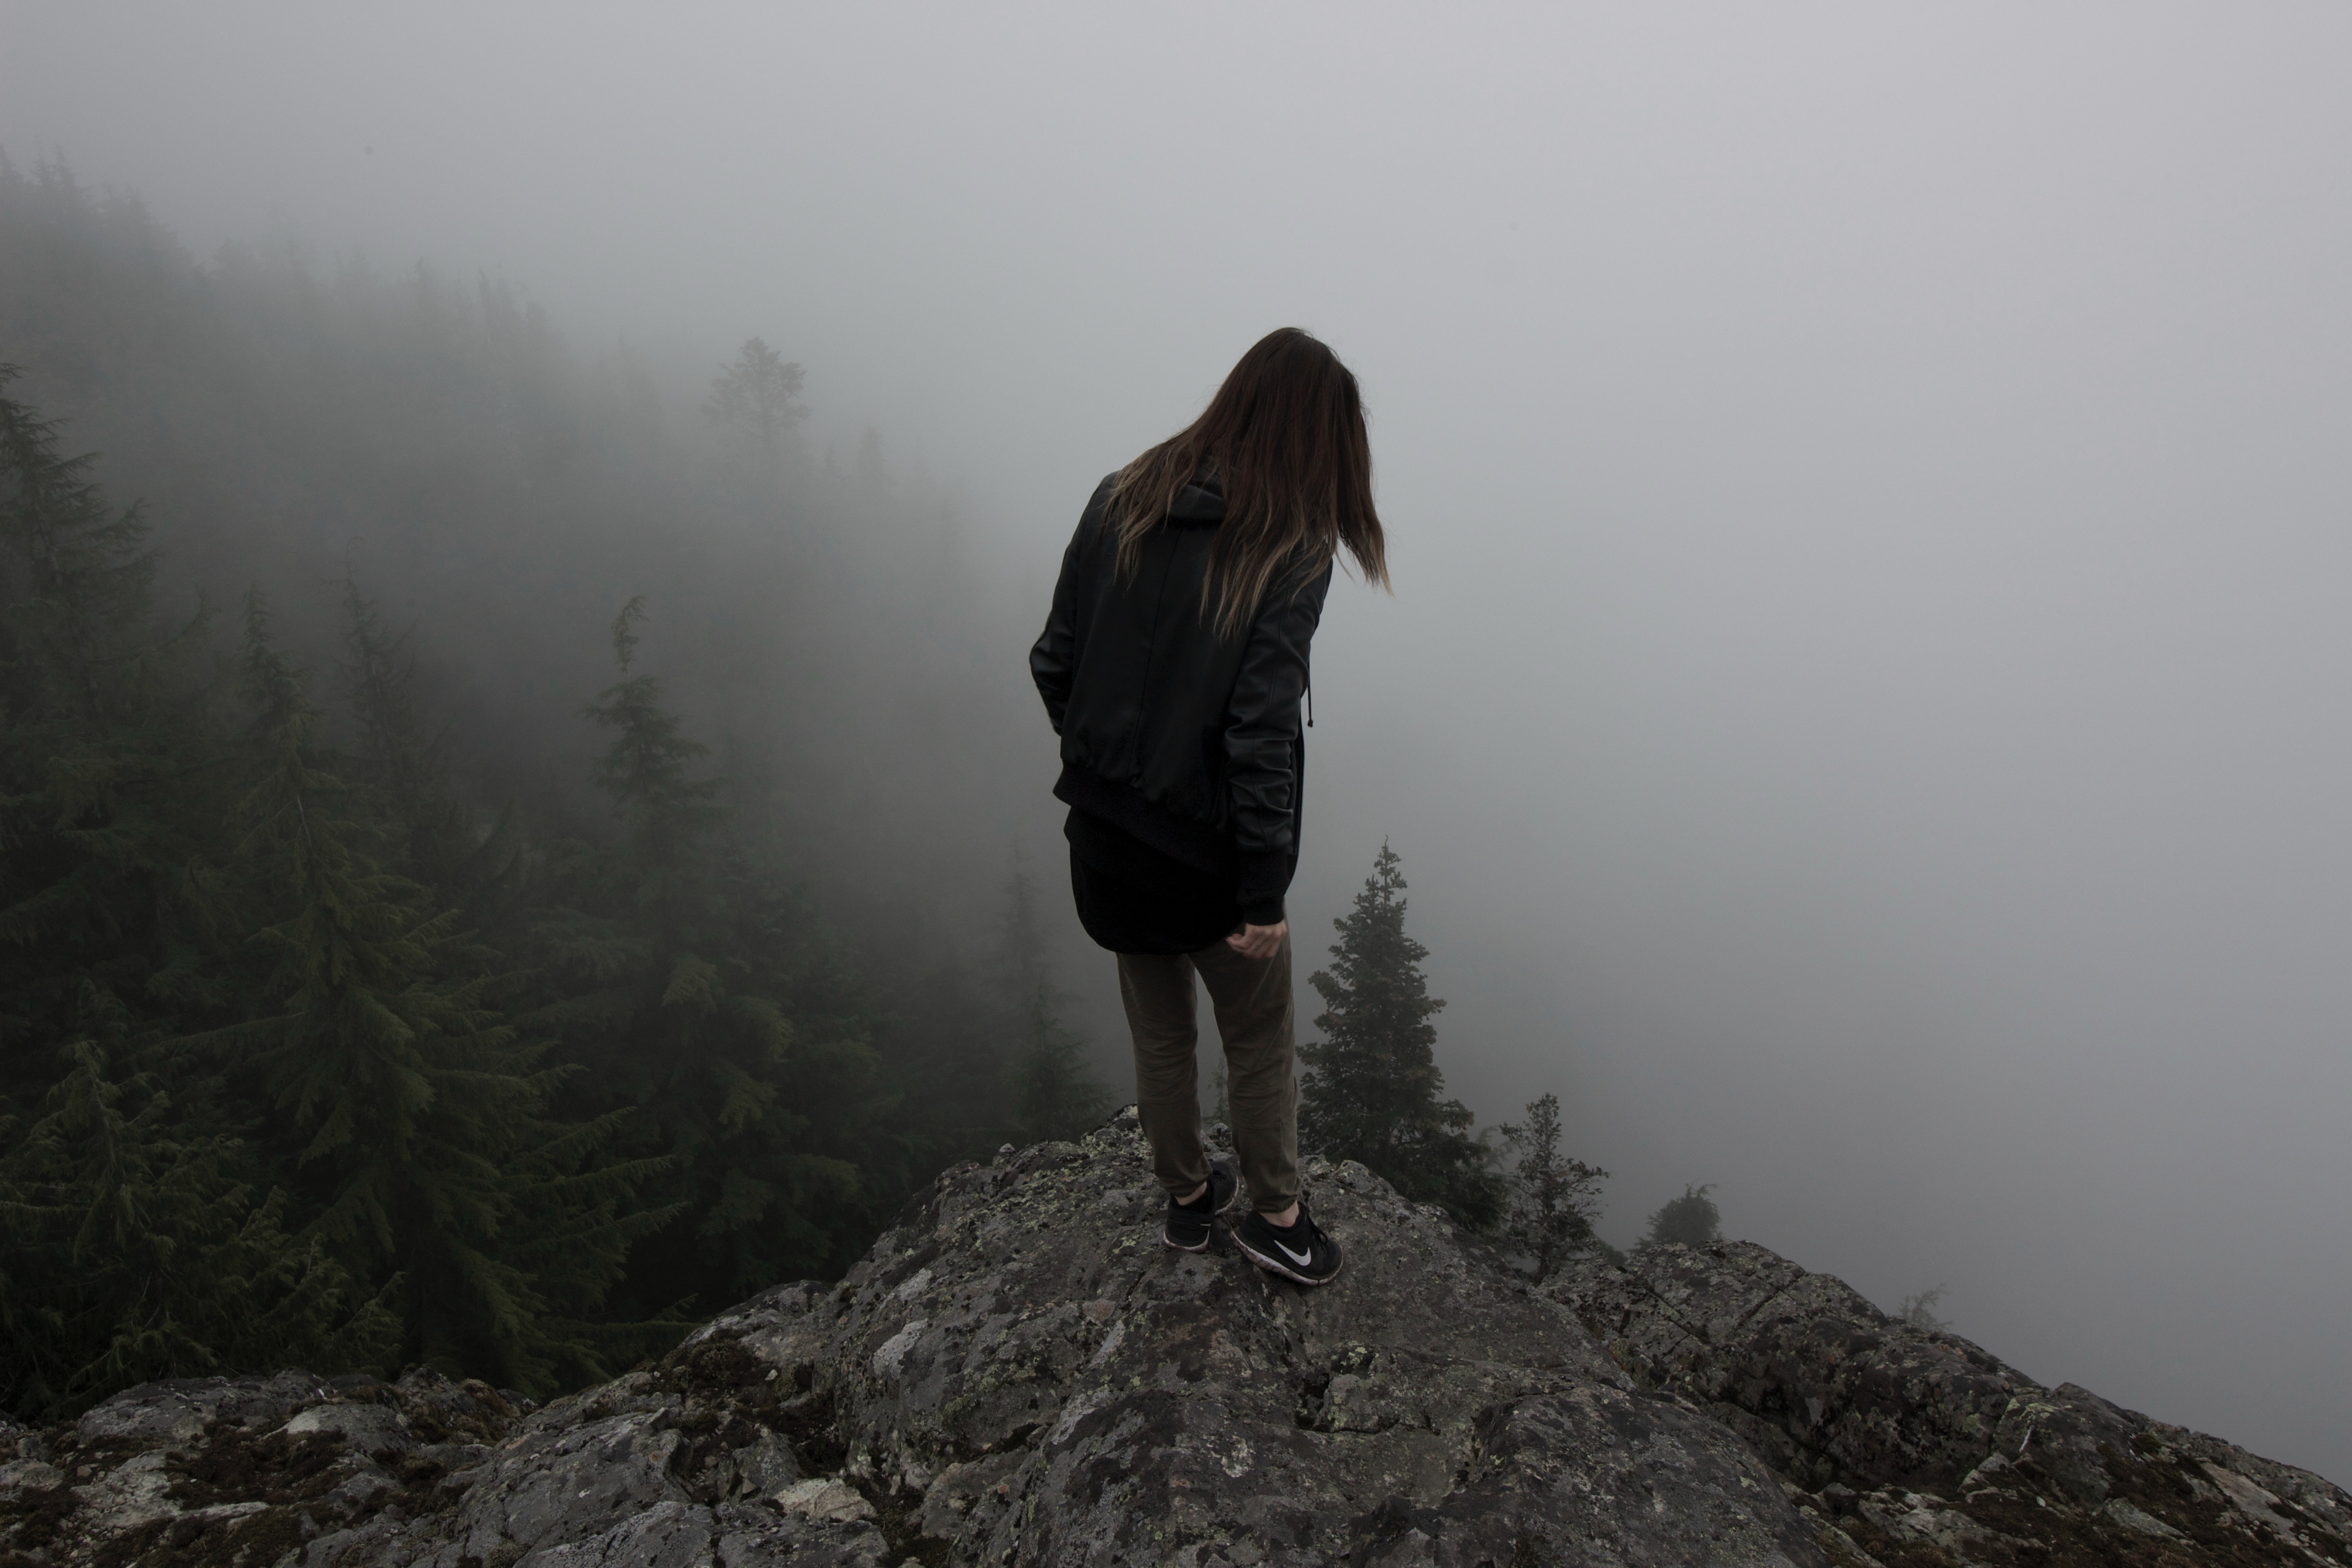 miscellanea, miscellaneous, fog, break, precipice, human, person, elevation Full HD